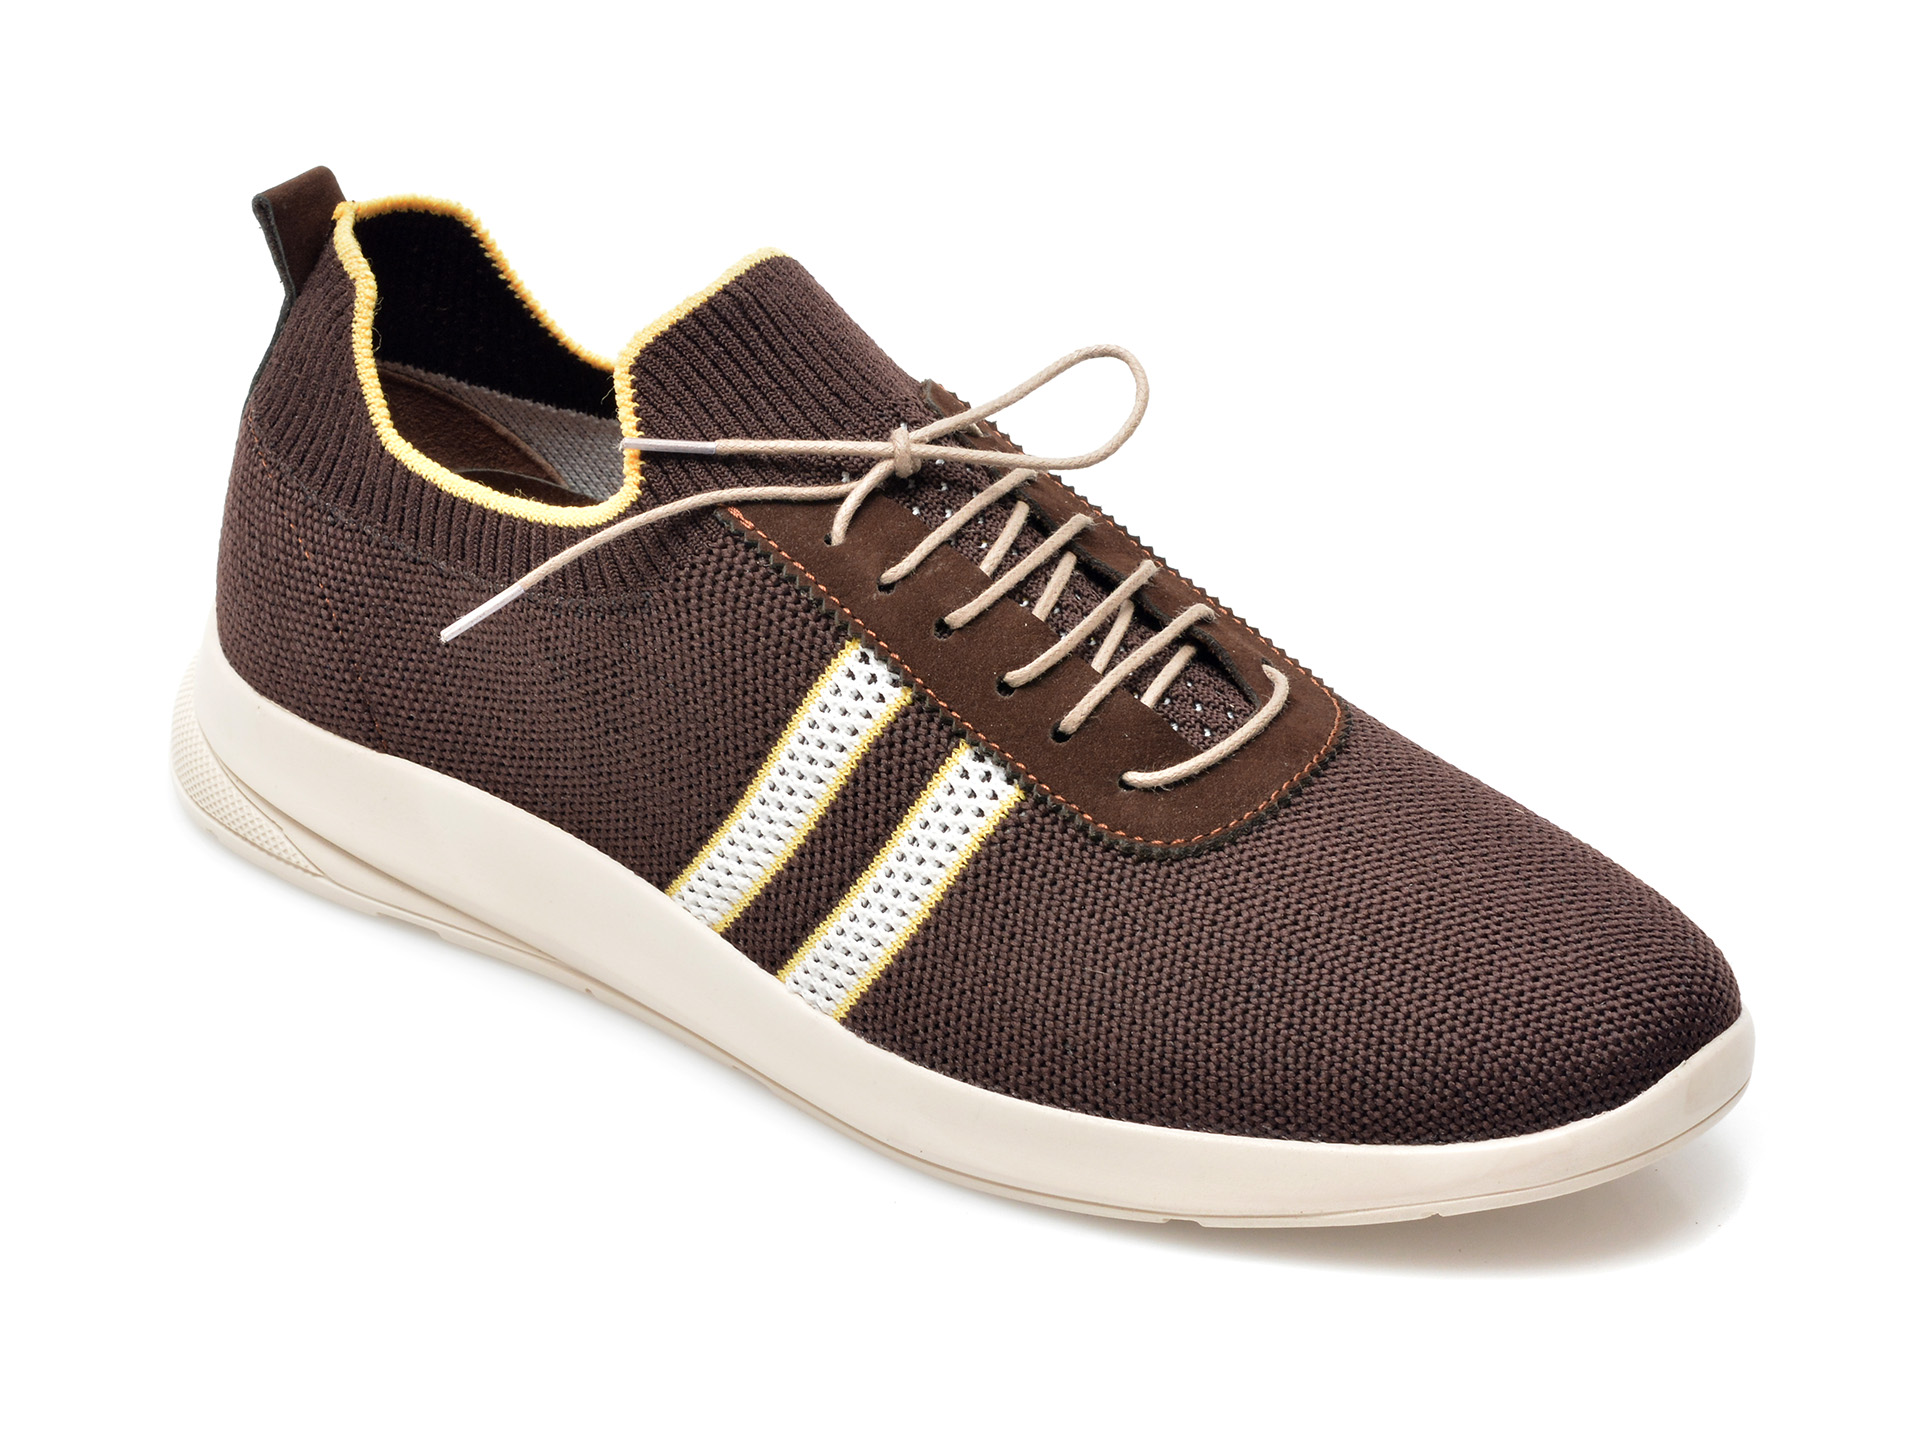 Pantofi sport ENES maro, 22300, din material textil /barbati/pantofi